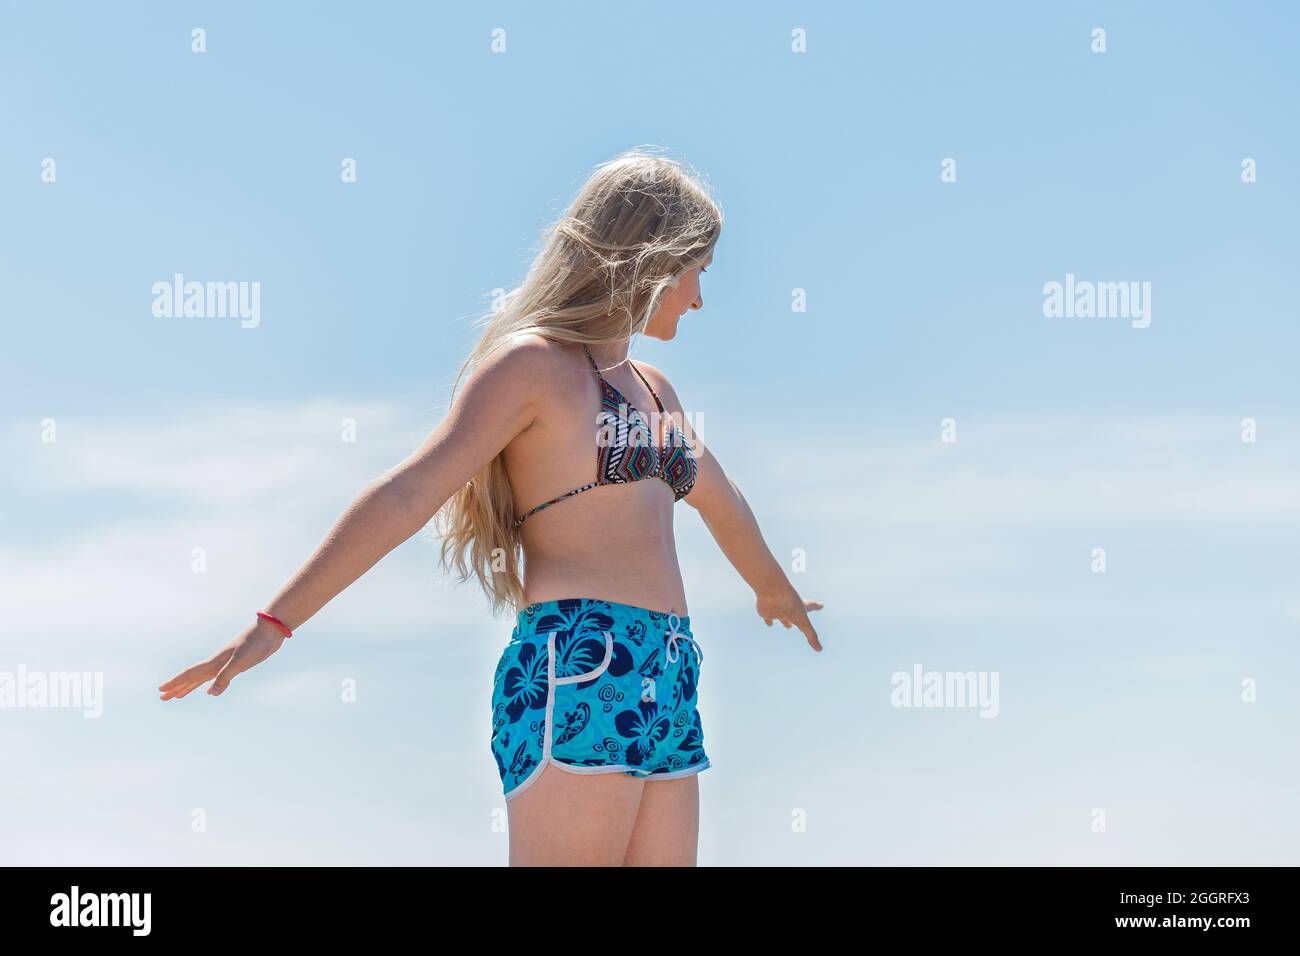 Ein junges blondes Mädchen, ein Teenager mit europäischem Auftritt in einem Badeanzug und Shorts, posiert mit den Händen an den Seiten gegen den blauen Himmel. Stockfoto